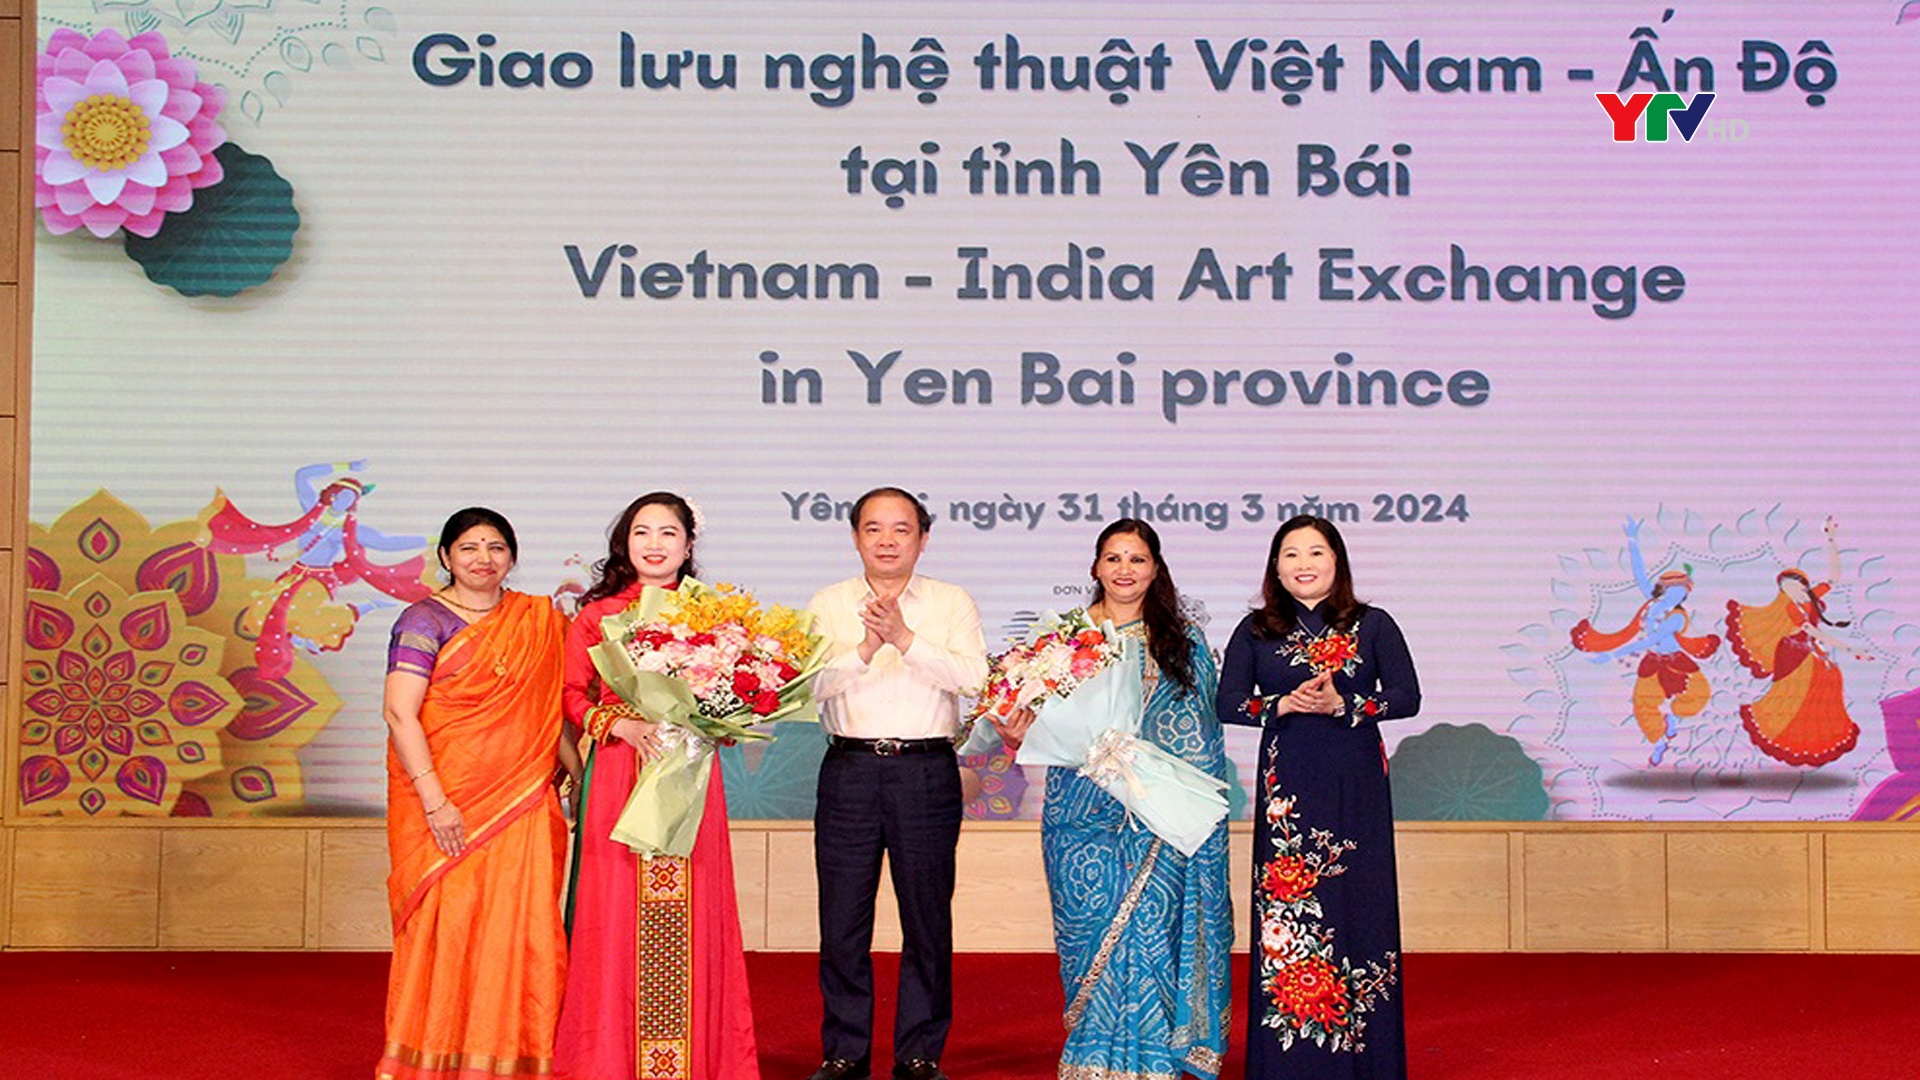 Đặc sắc chương trình giao lưu nghệ thuật Việt Nam - Ấn Độ tại tỉnh Yên Bái